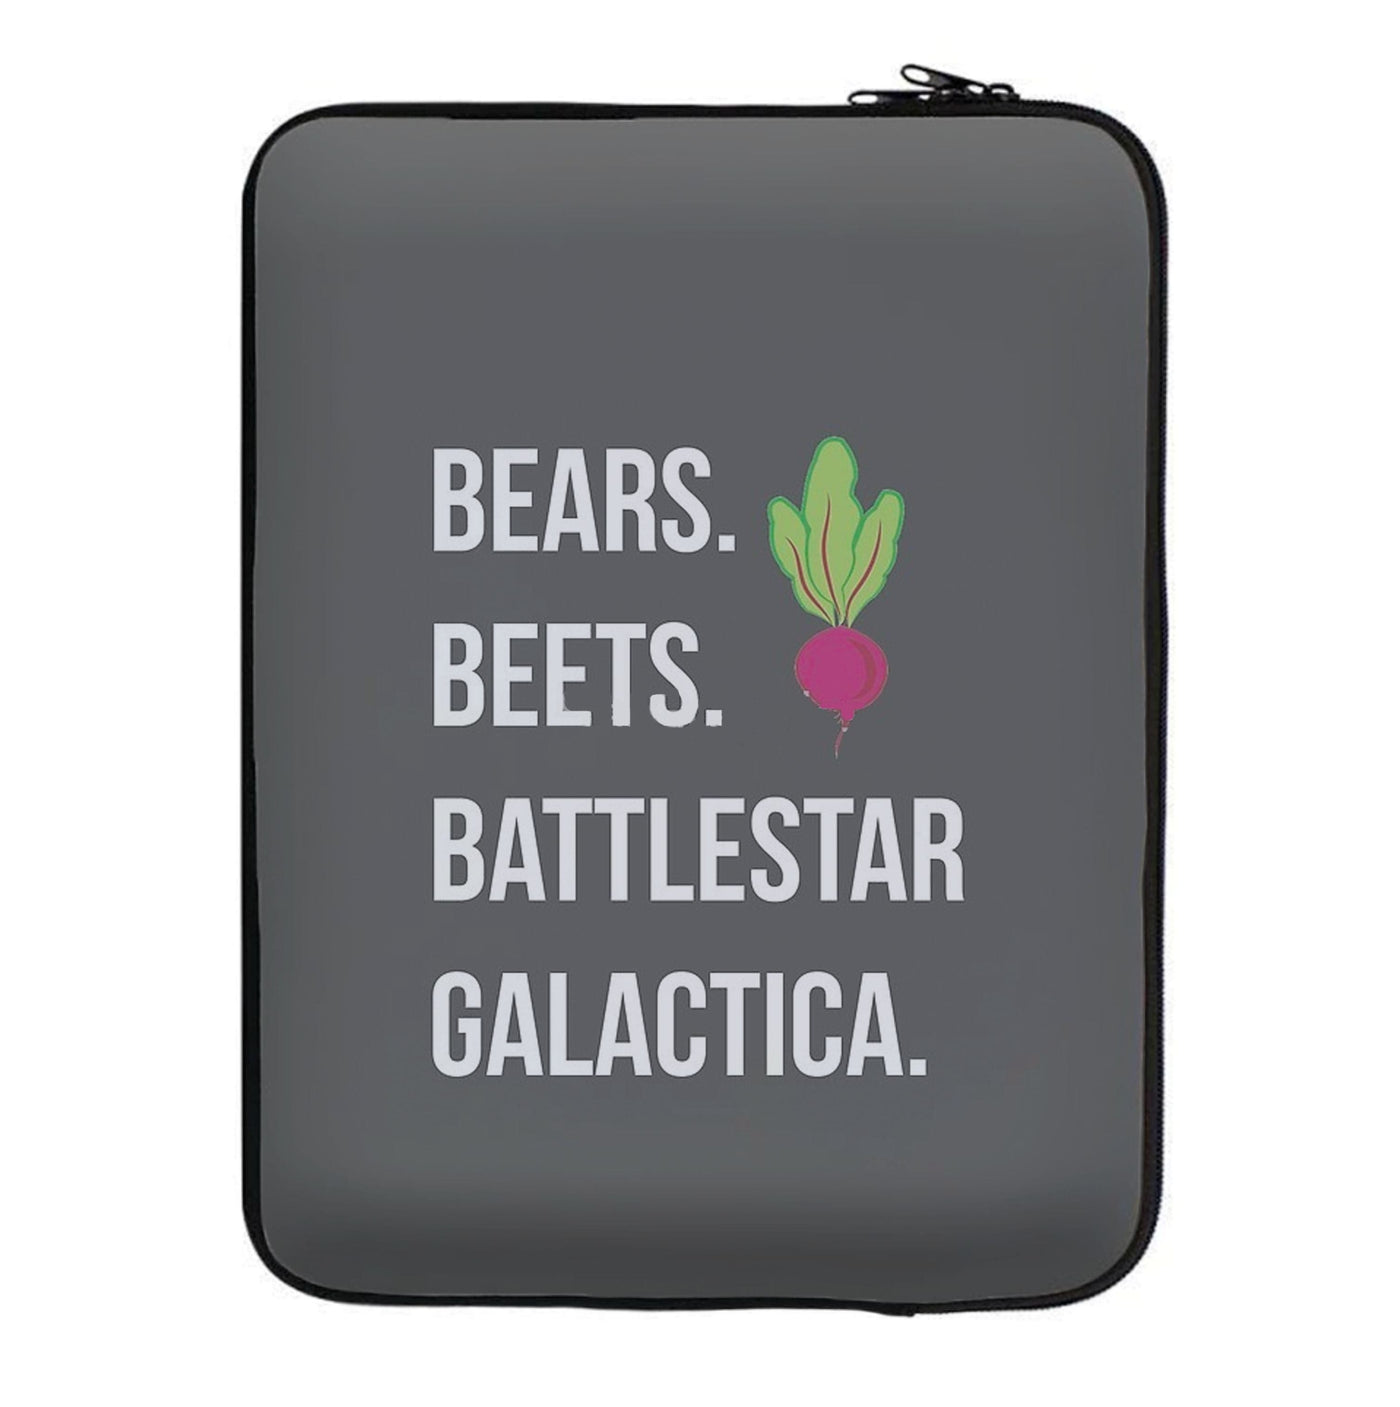 Bears. Beets. Battlestar Galactica Illustration - The Office Laptop Sleeve